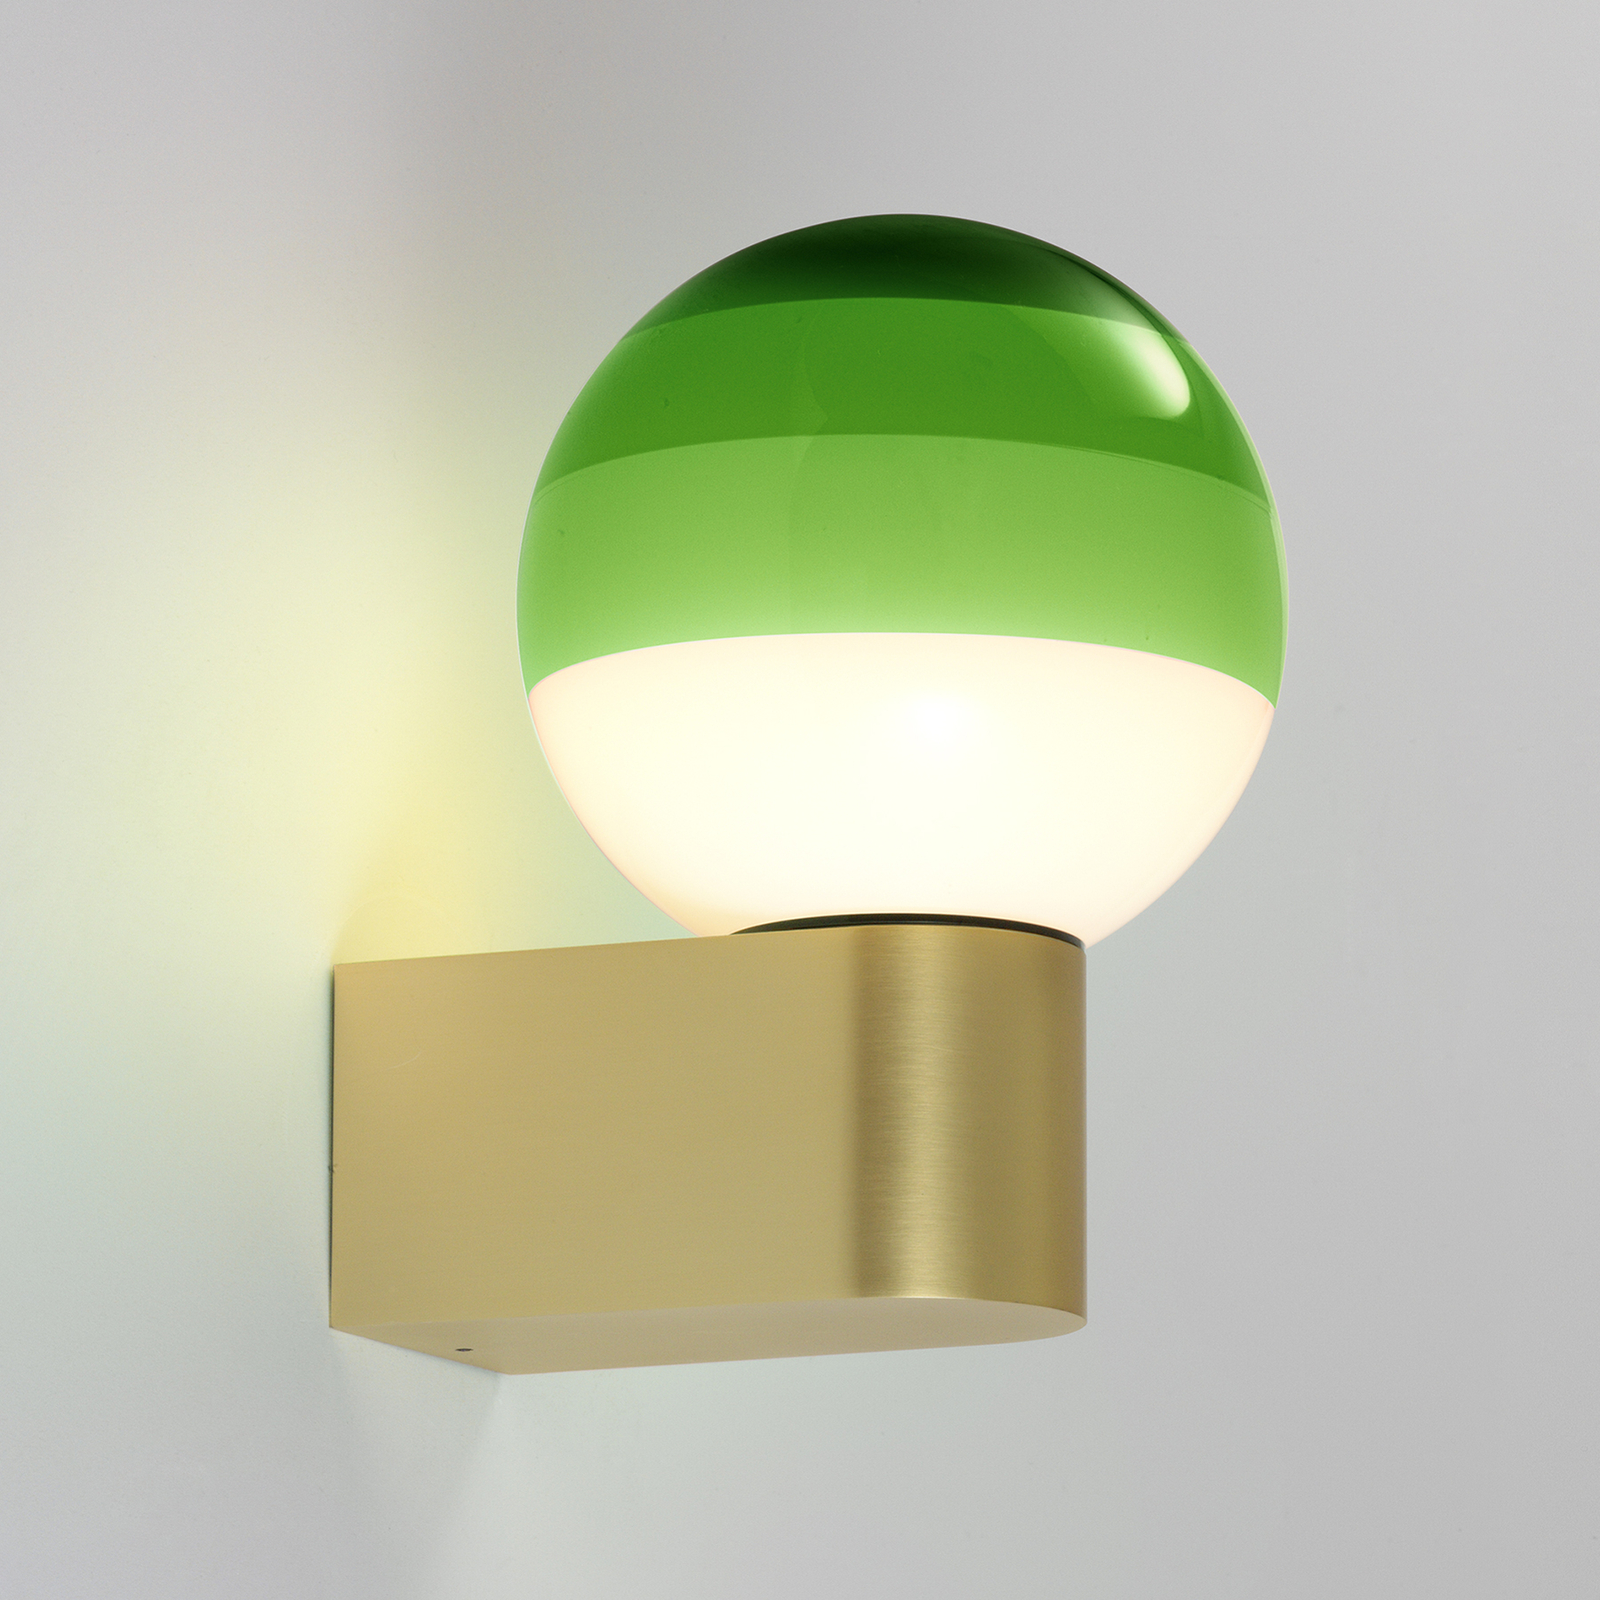 MARSET Dipping Light A1 LED-vägglampa, grön/guld